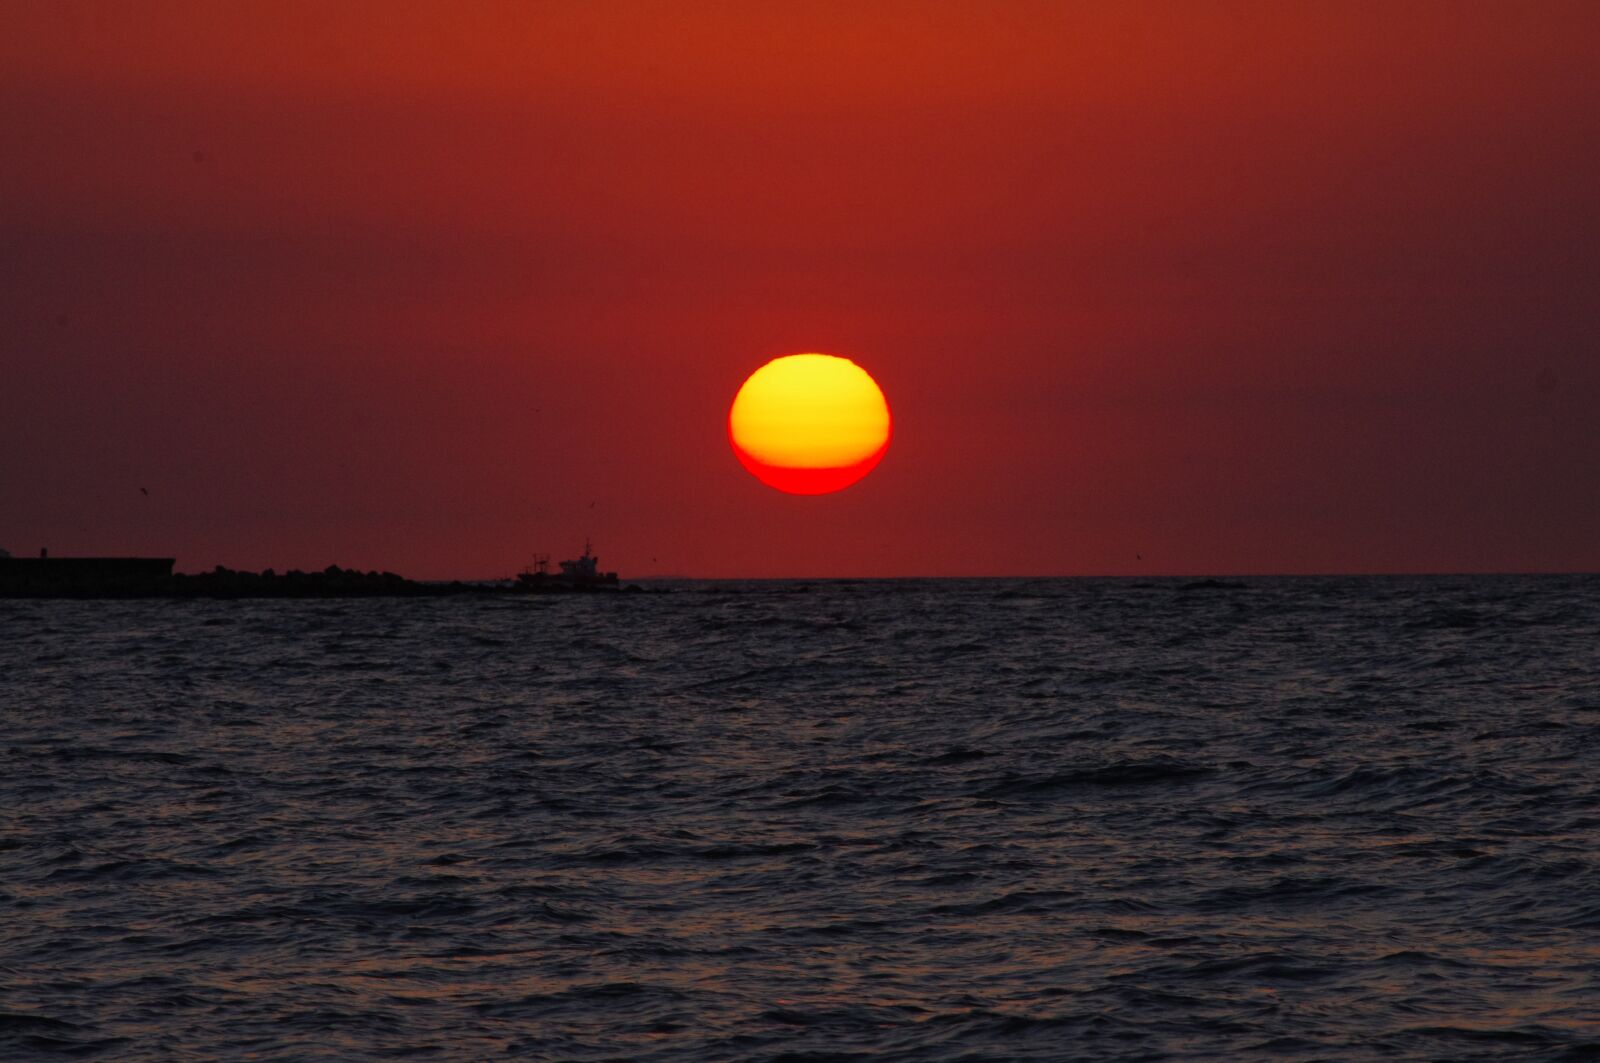 Pentax K-r sample photo. Red dawn, sun, sunrise photography